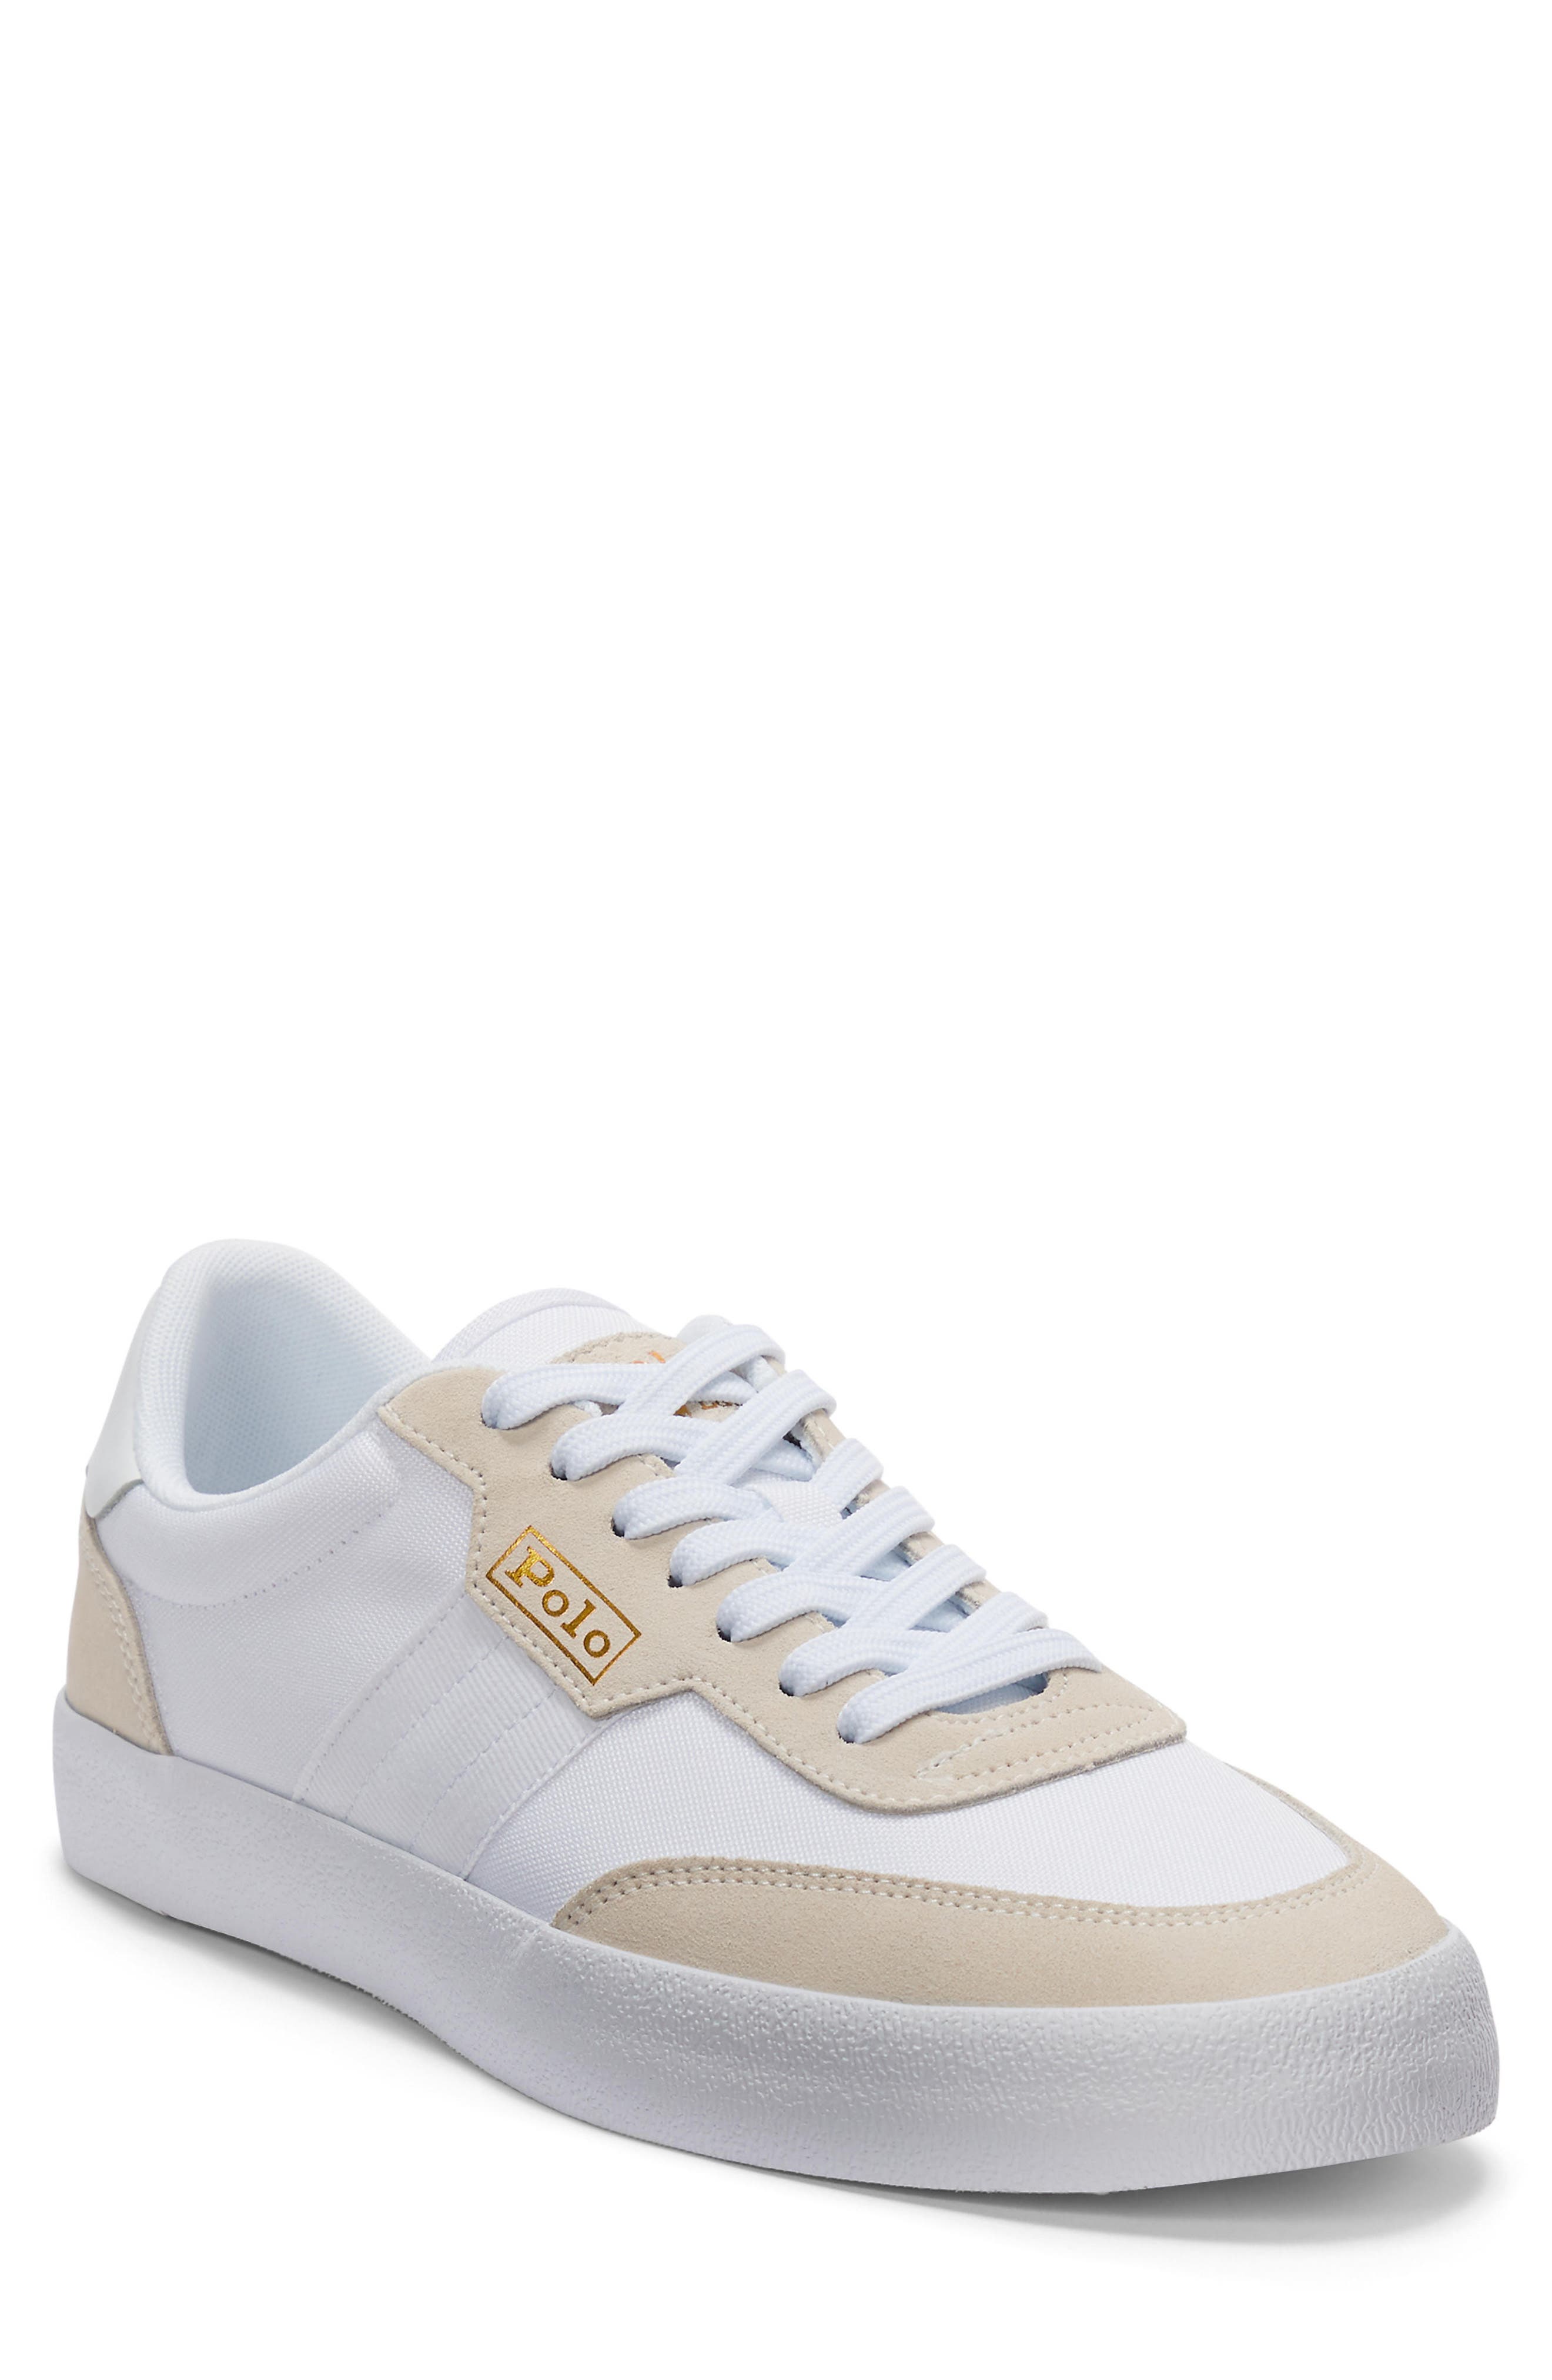 Buy > ralph lauren polo tennis shoes > in stock